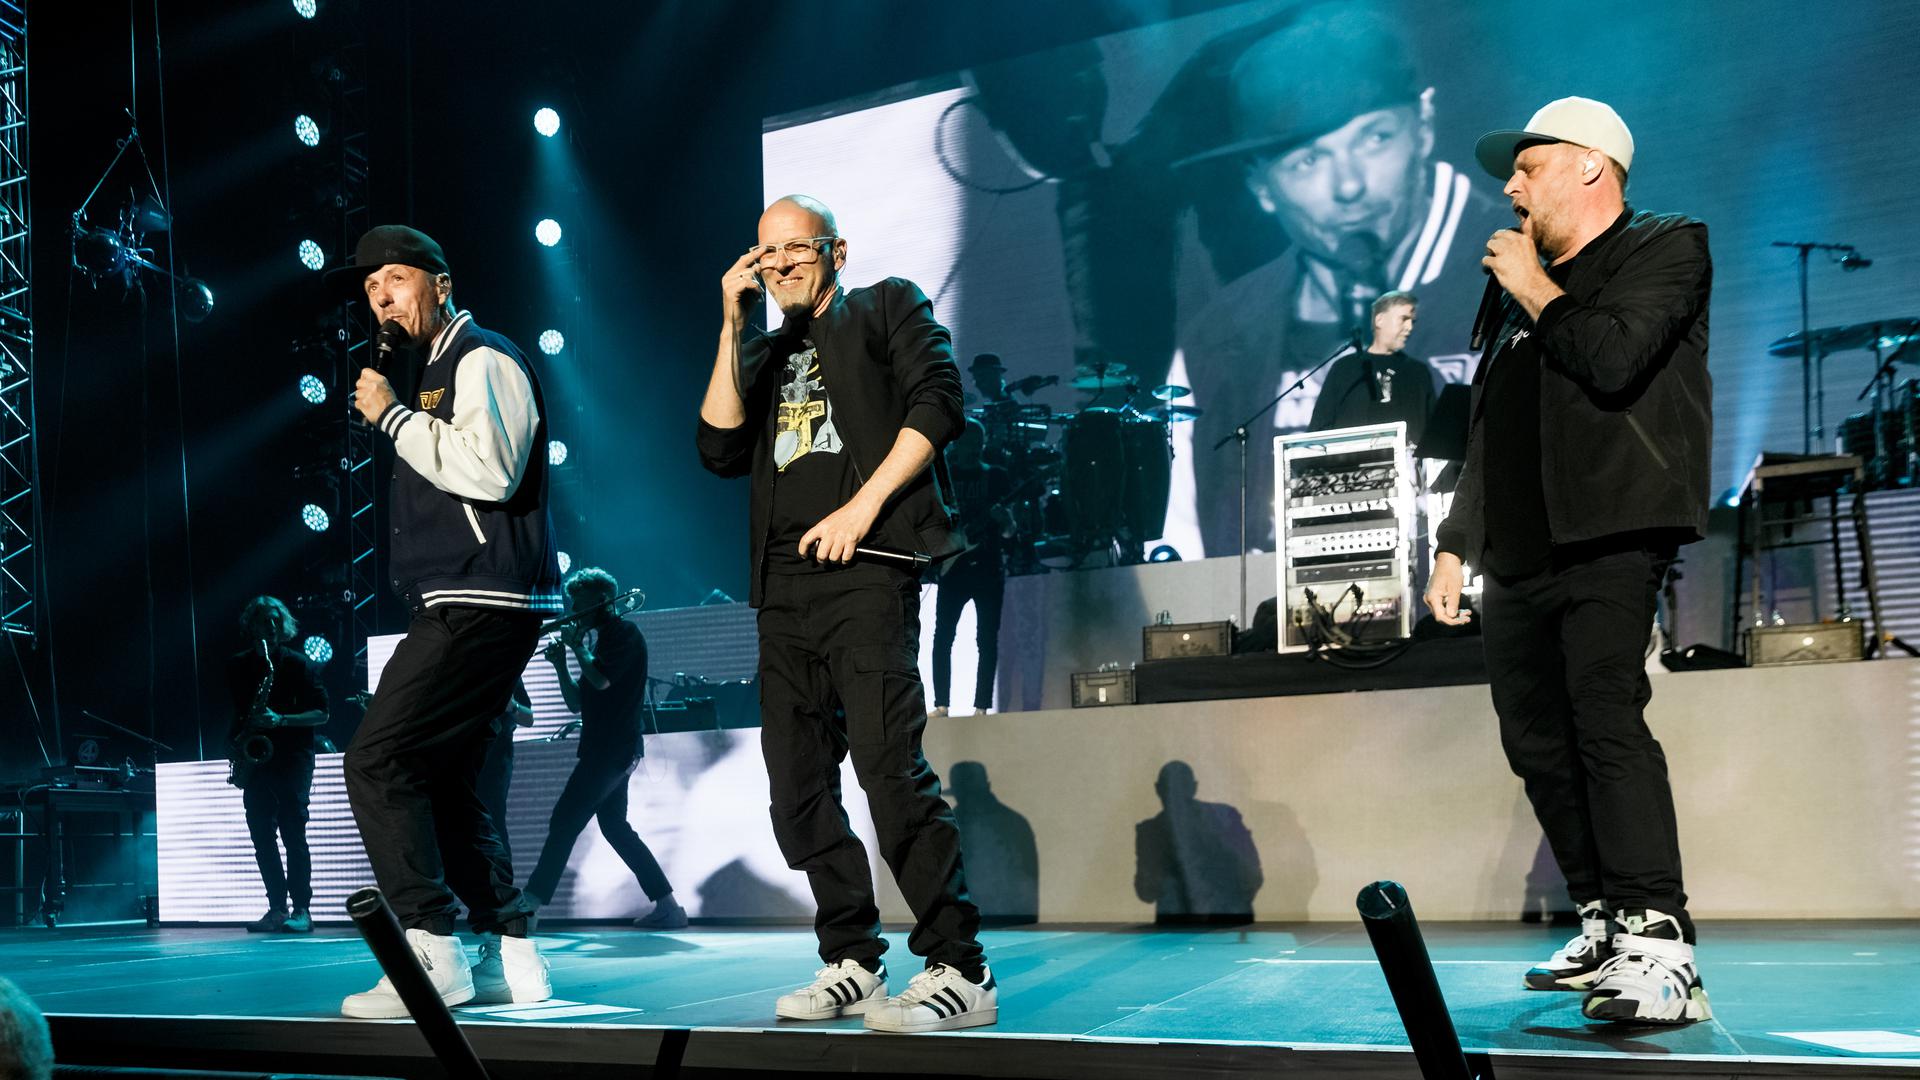 Michi Beck (von links nach rechts), Thomas D und Smudo performen beim Auftakt der Deutschland-Tour der Hip-Hop-Gruppe „Die Fantastischen Vier“. Im Hintergrund ist And.Ypsilon.